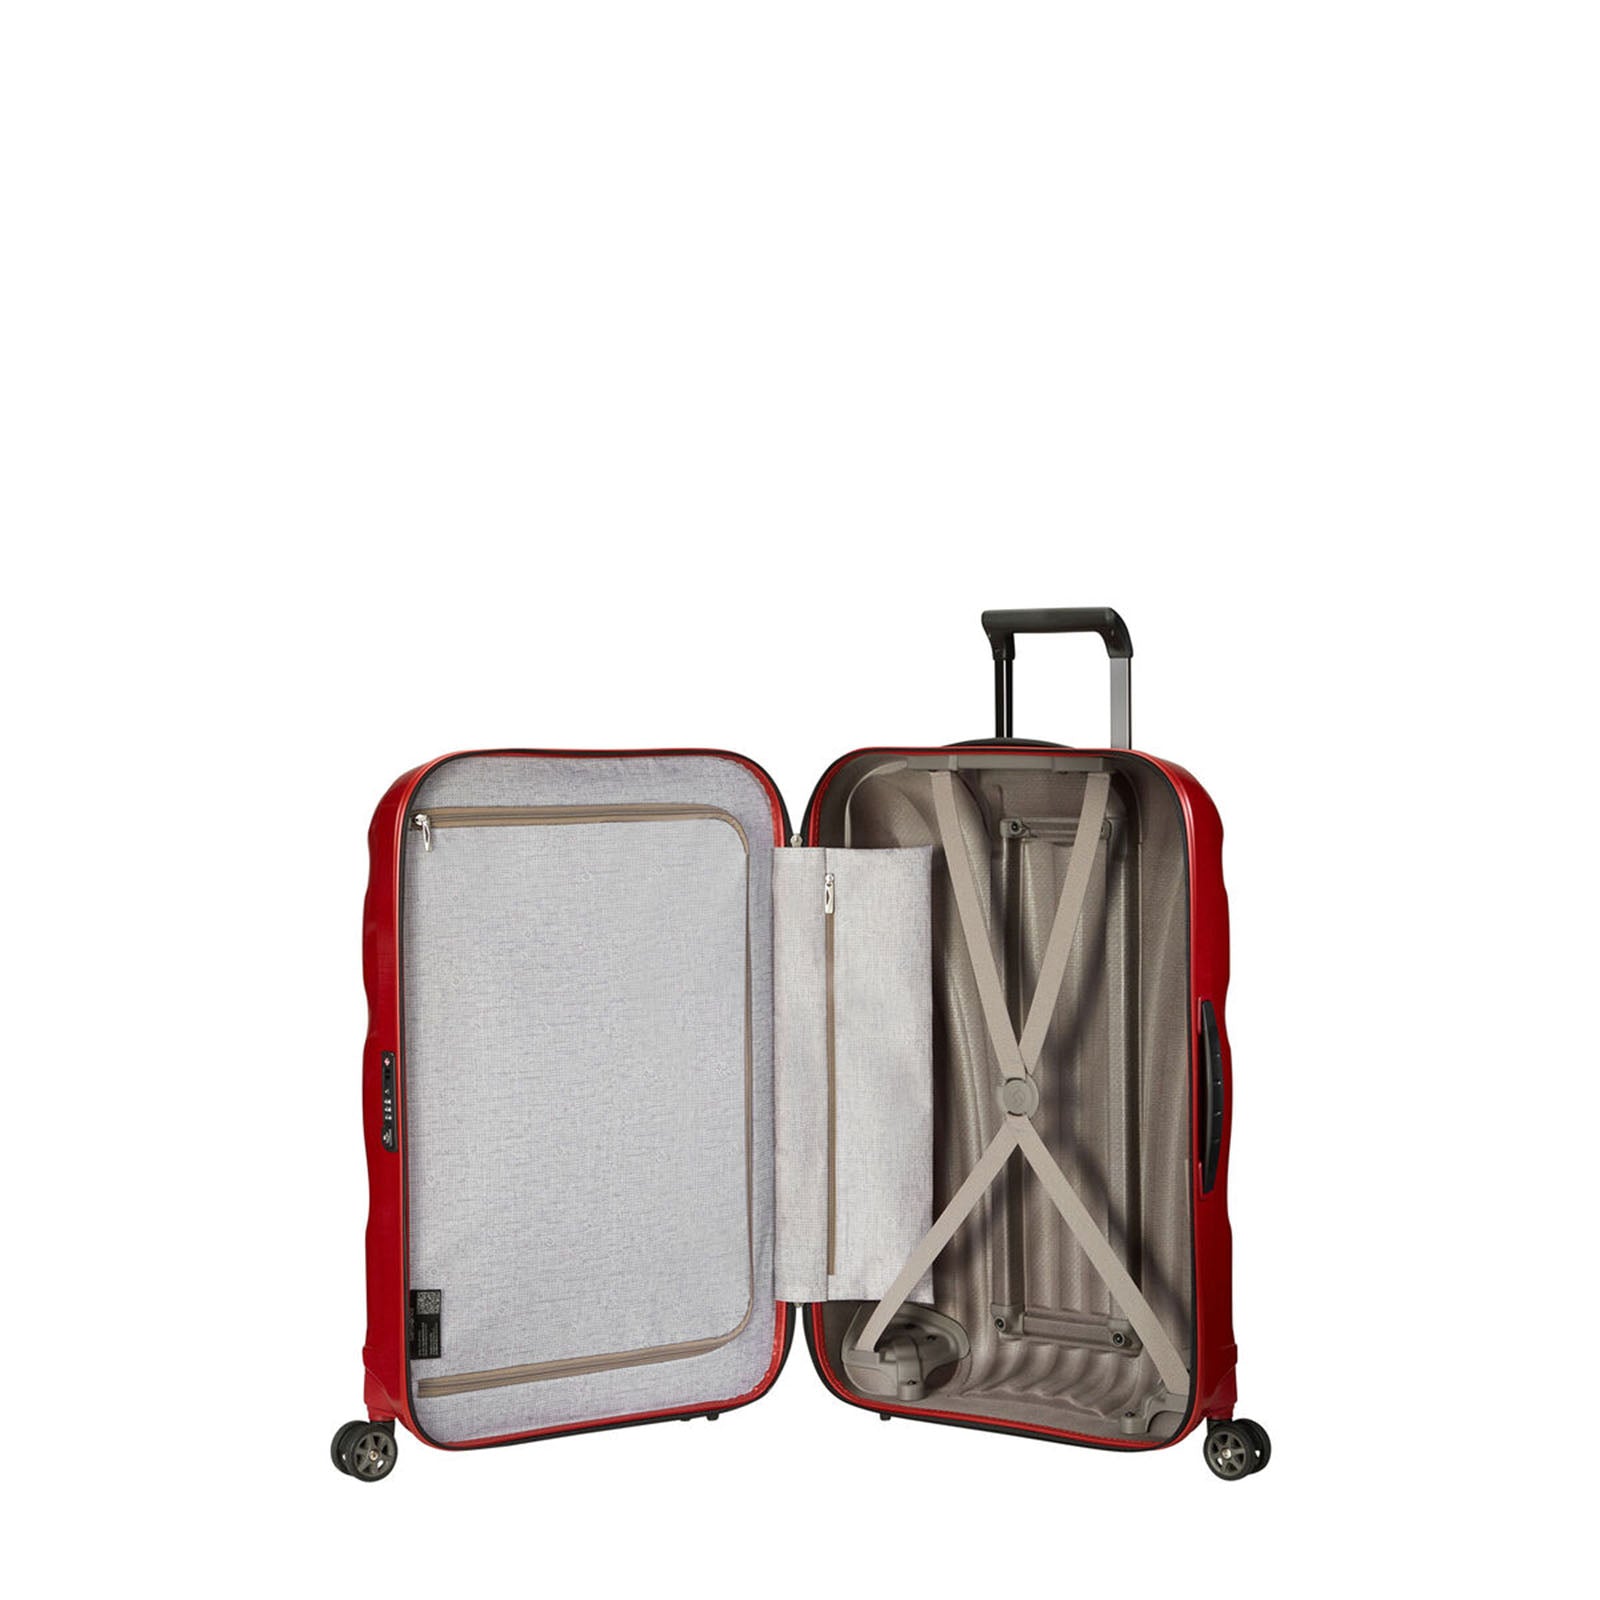 Samsonite-C-Lite-75cm-Suitcase-Chili-Red-Open